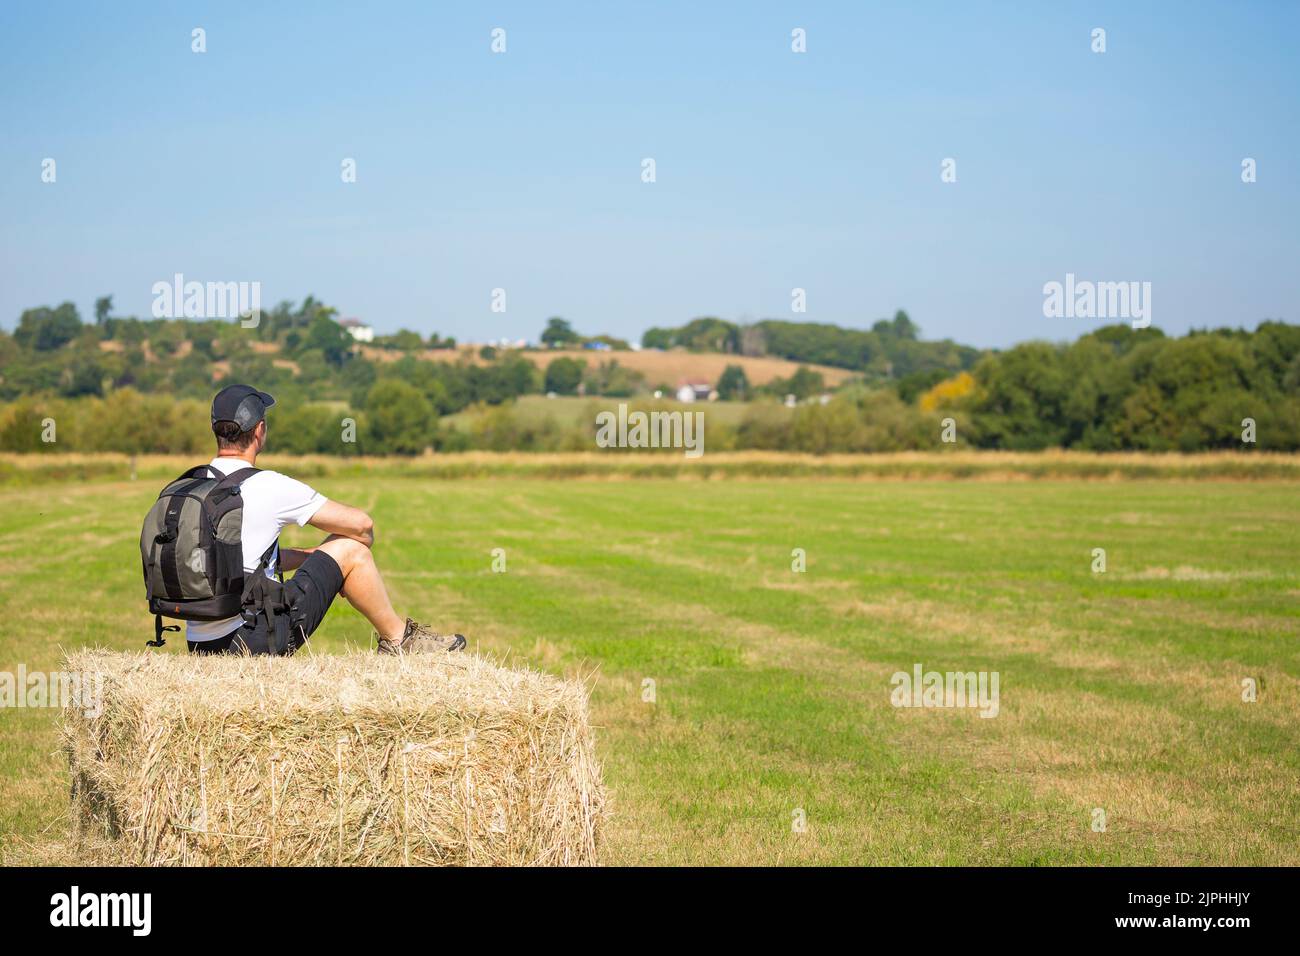 Vue arrière d'un homme en short et casquette, sac à dos à l'arrière, assis isolé sur une balle de paille/foin dans la campagne du Royaume-Uni lors d'une chaude journée d'été. Banque D'Images